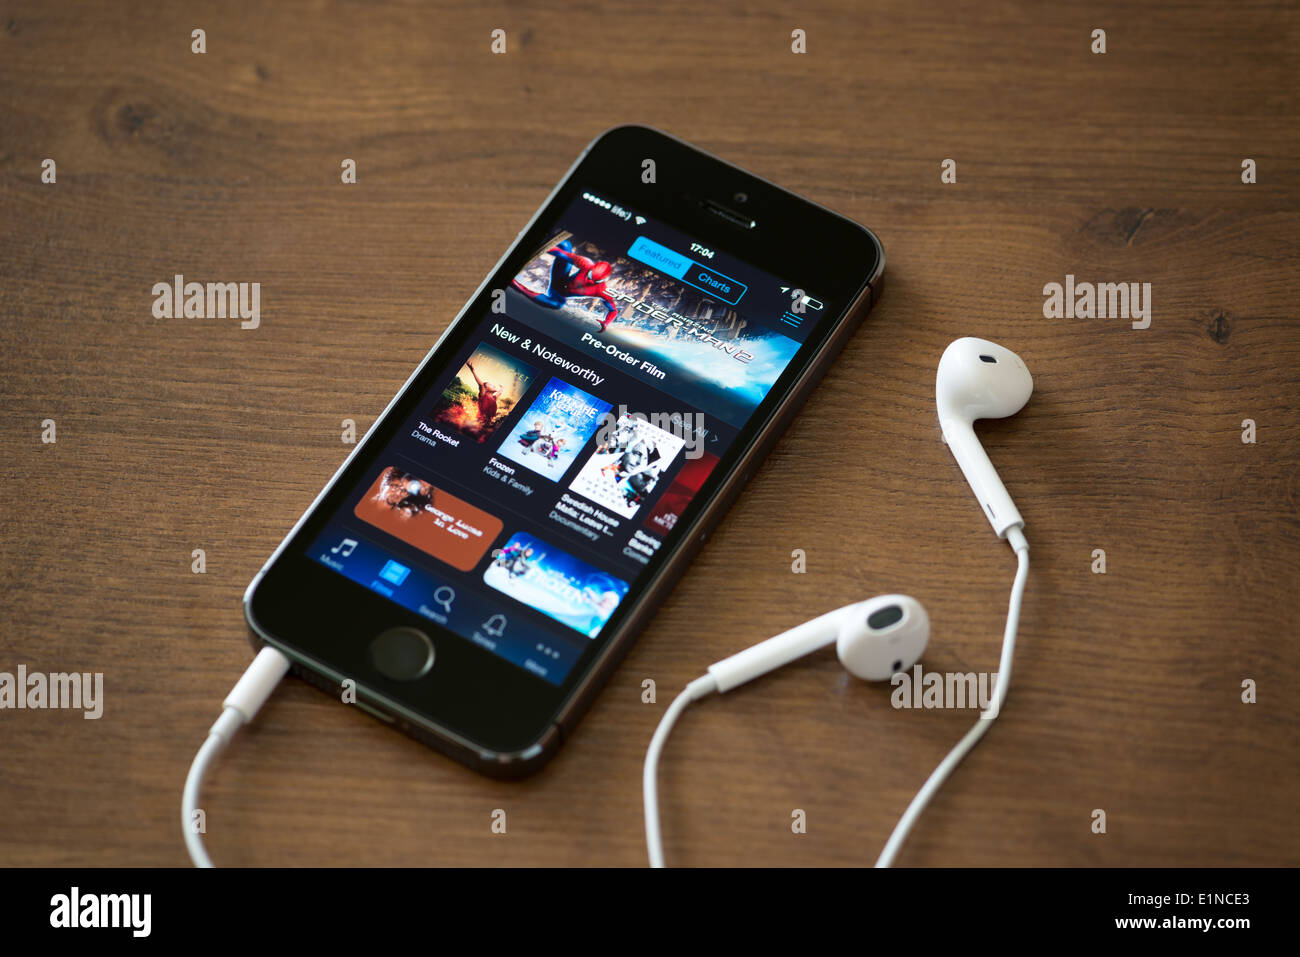 Brand New Apple iPhone 5S avec iTunes store sur l'écran posé sur un bureau avec des écouteurs Banque D'Images